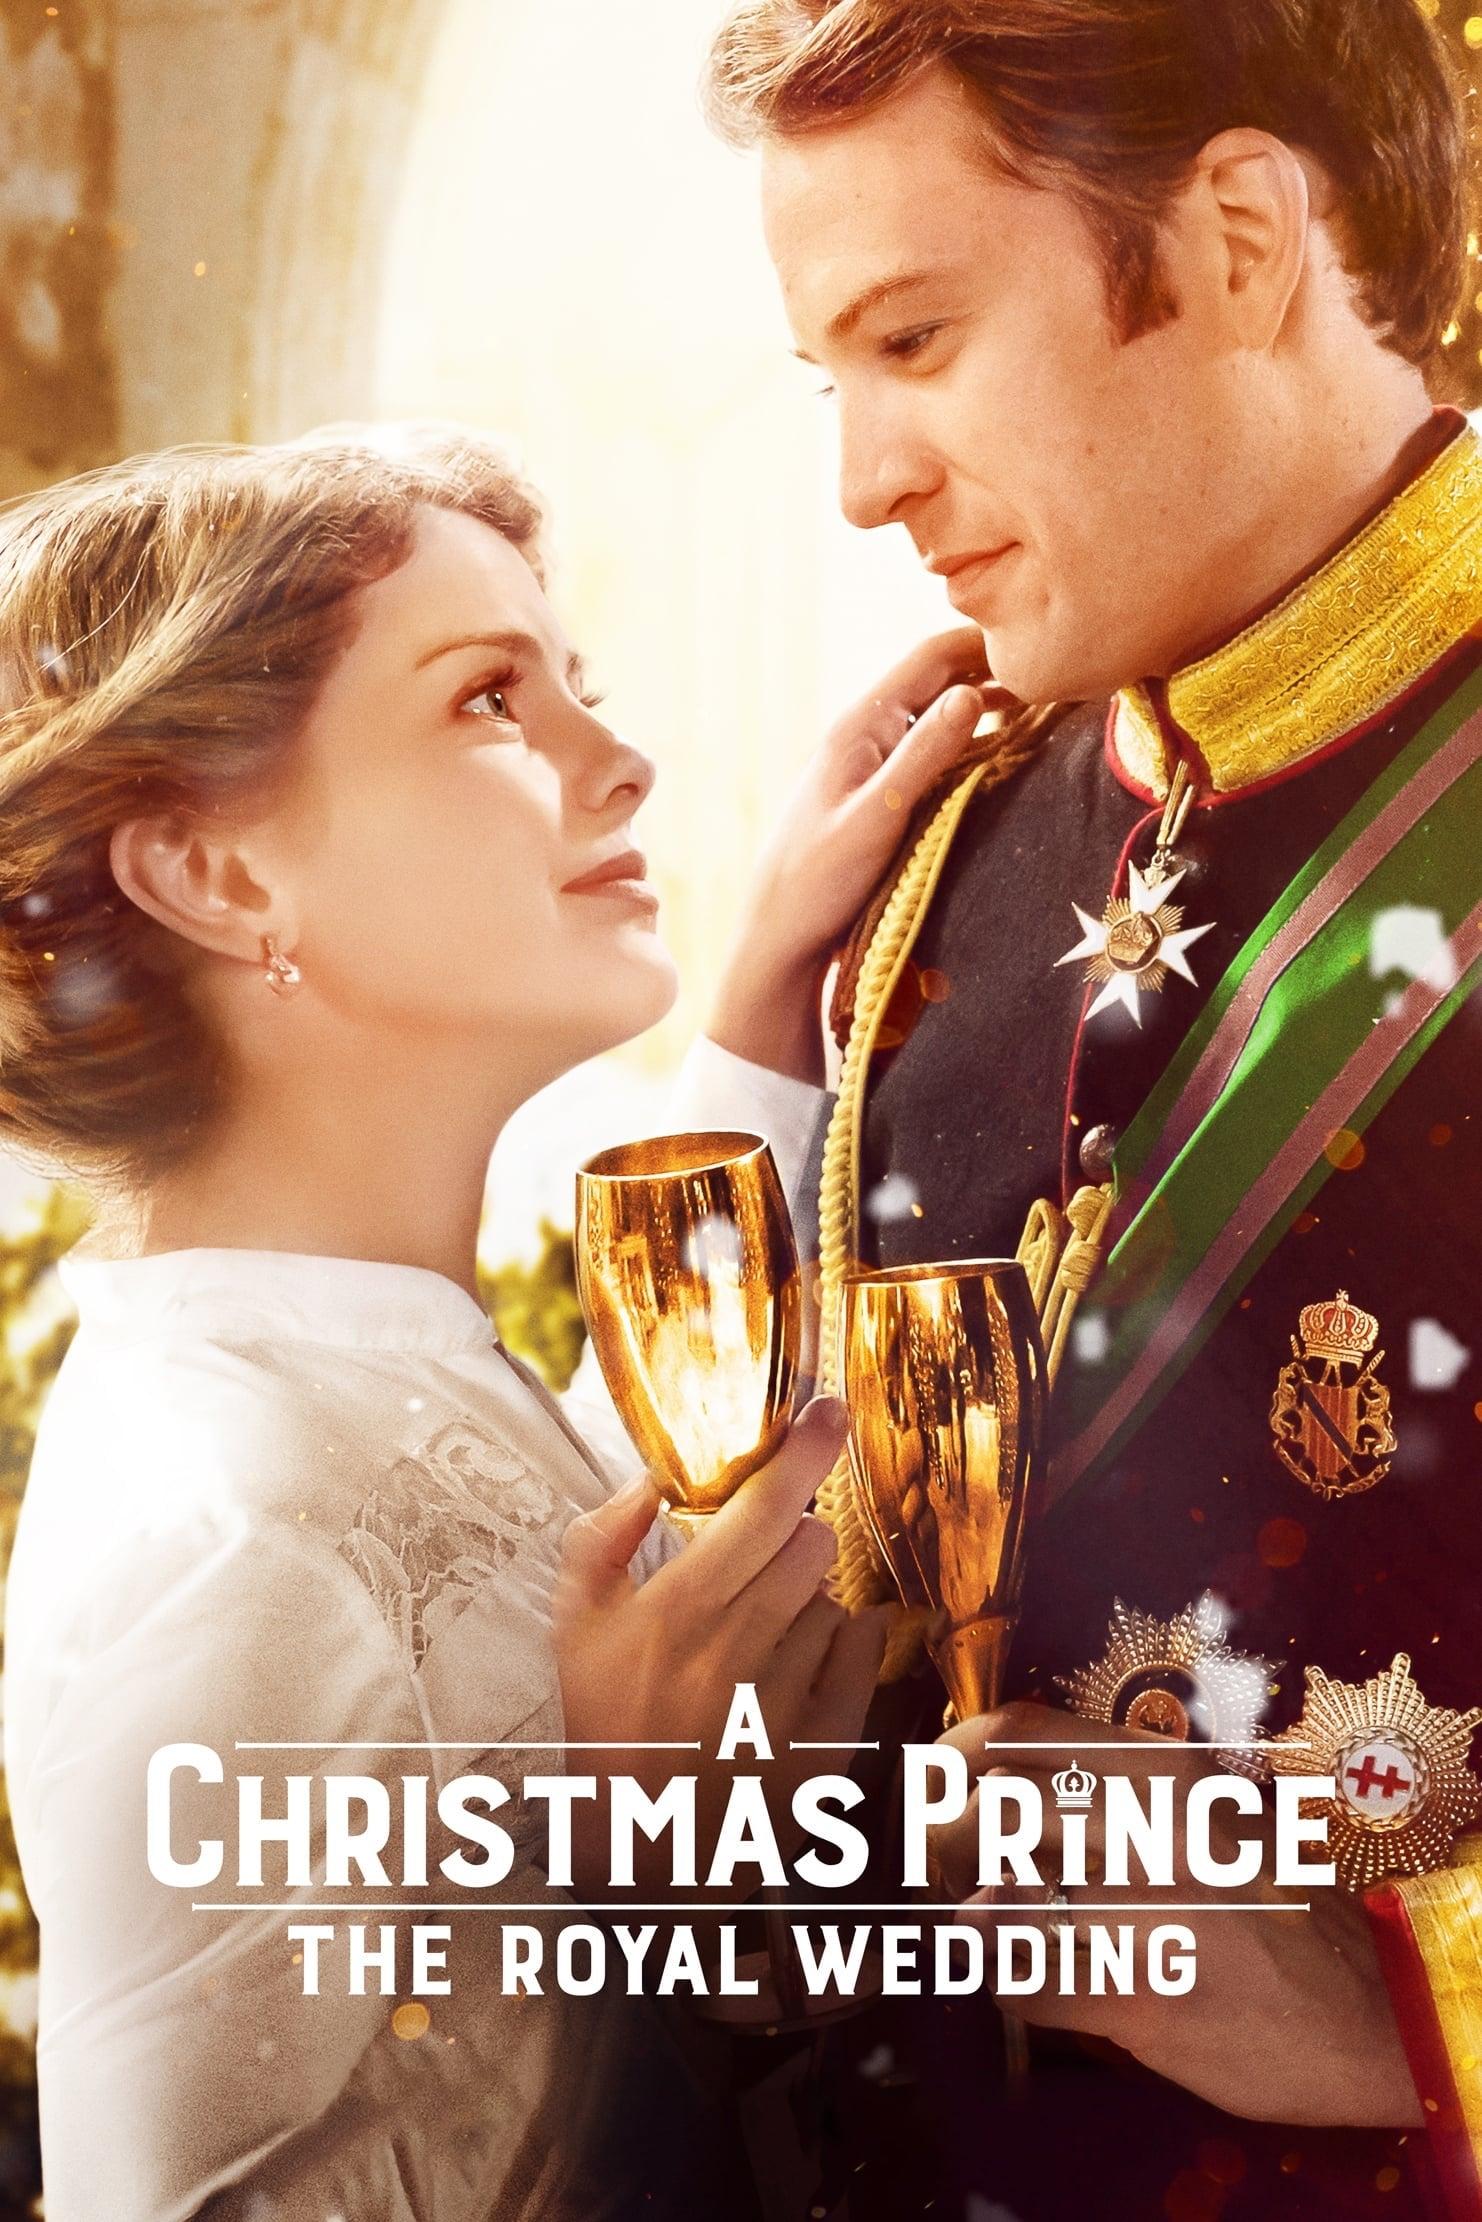 A Christmas Prince: The Royal Wedding poster